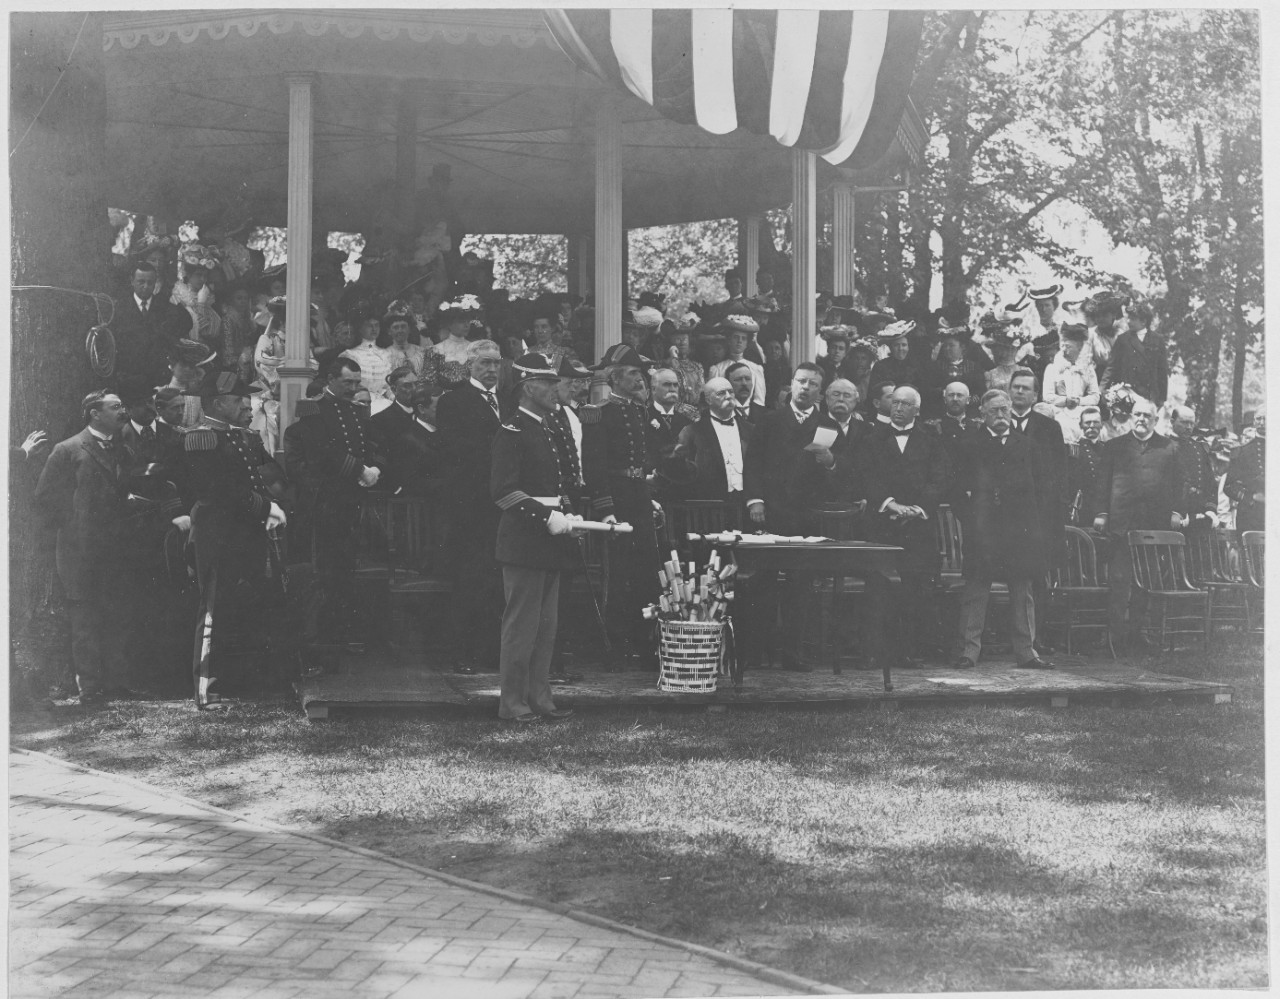 President Roosevelt addressing cadets after graduating, 1902